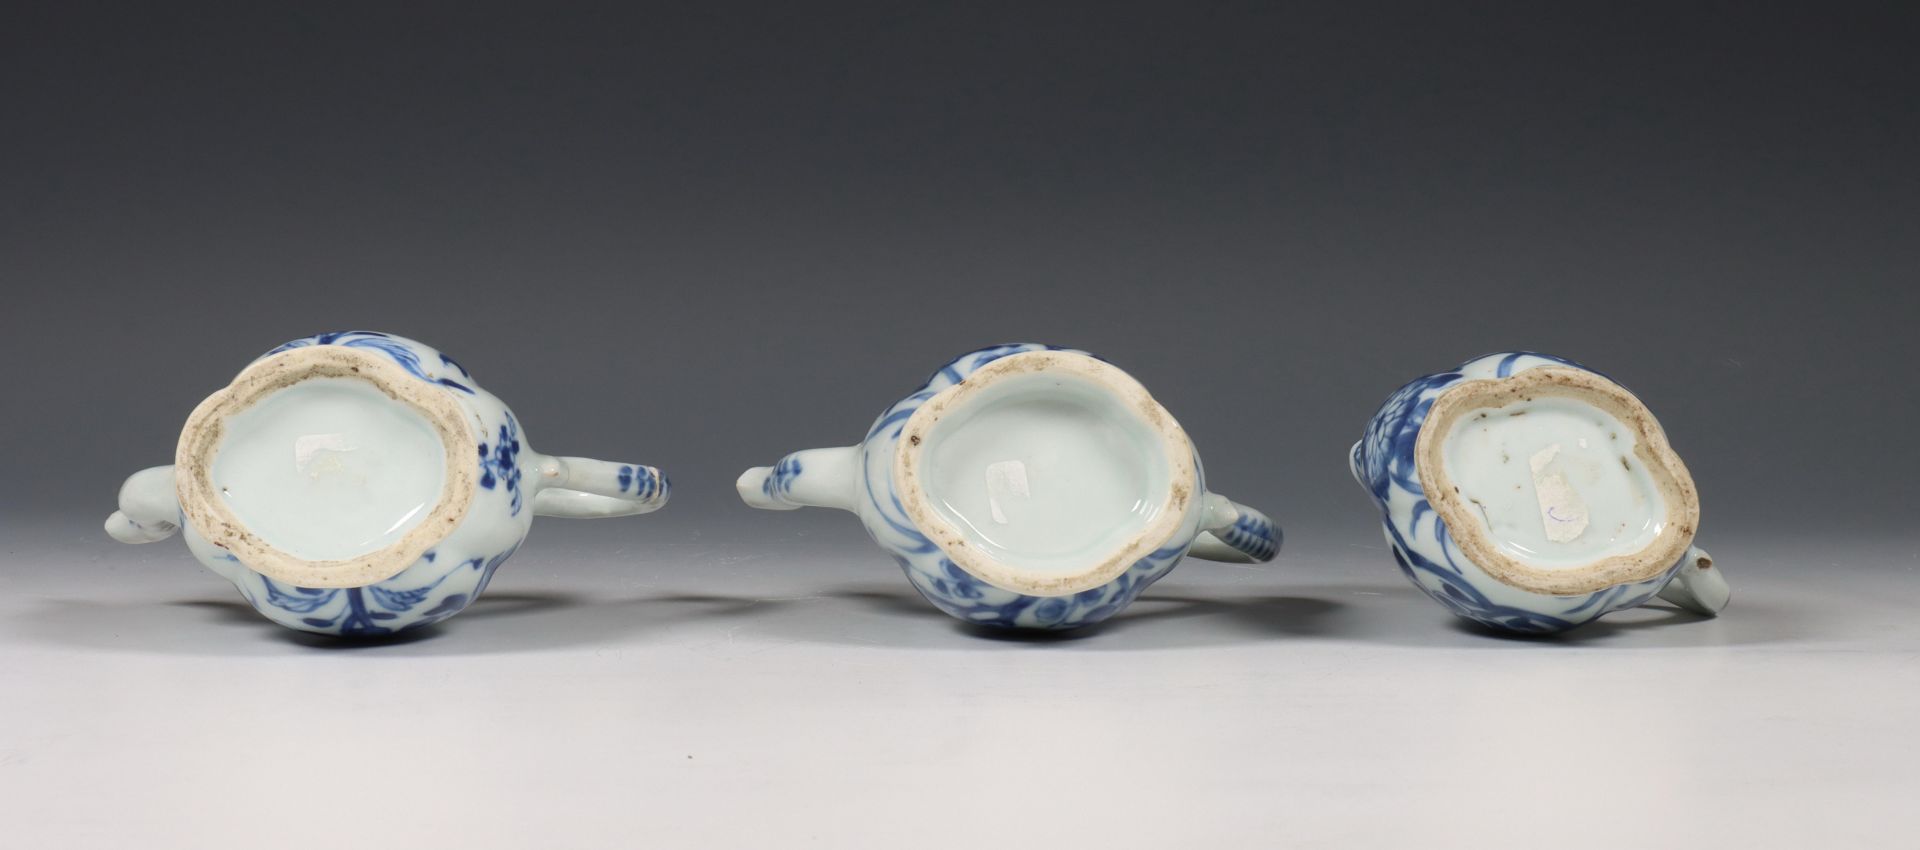 China, samengesteld blauw-wit porseleinen olie- en azijnstel, 18e eeuw, - Bild 6 aus 6